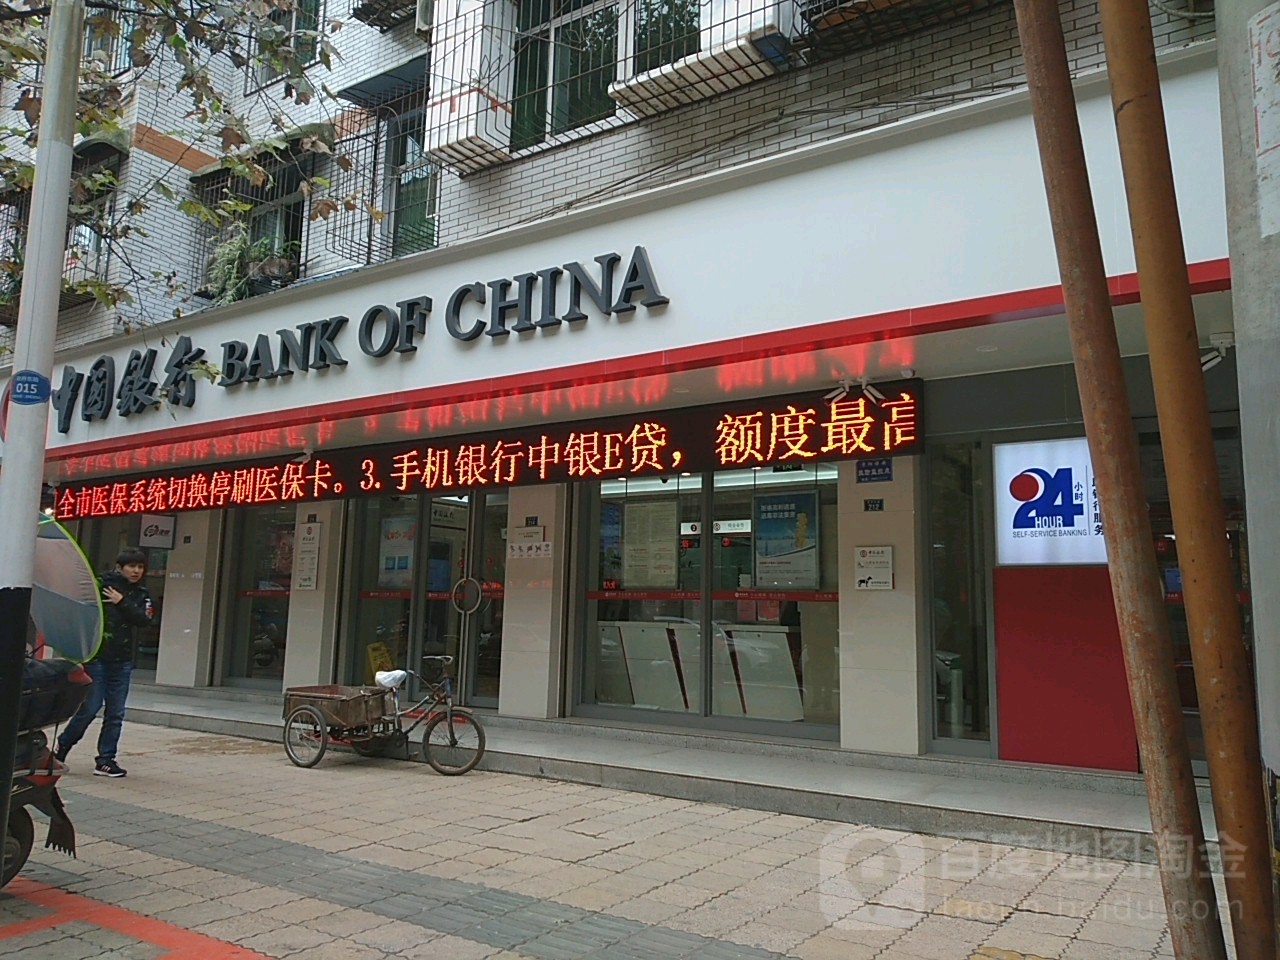 中國銀行(資陽政府東路支行)